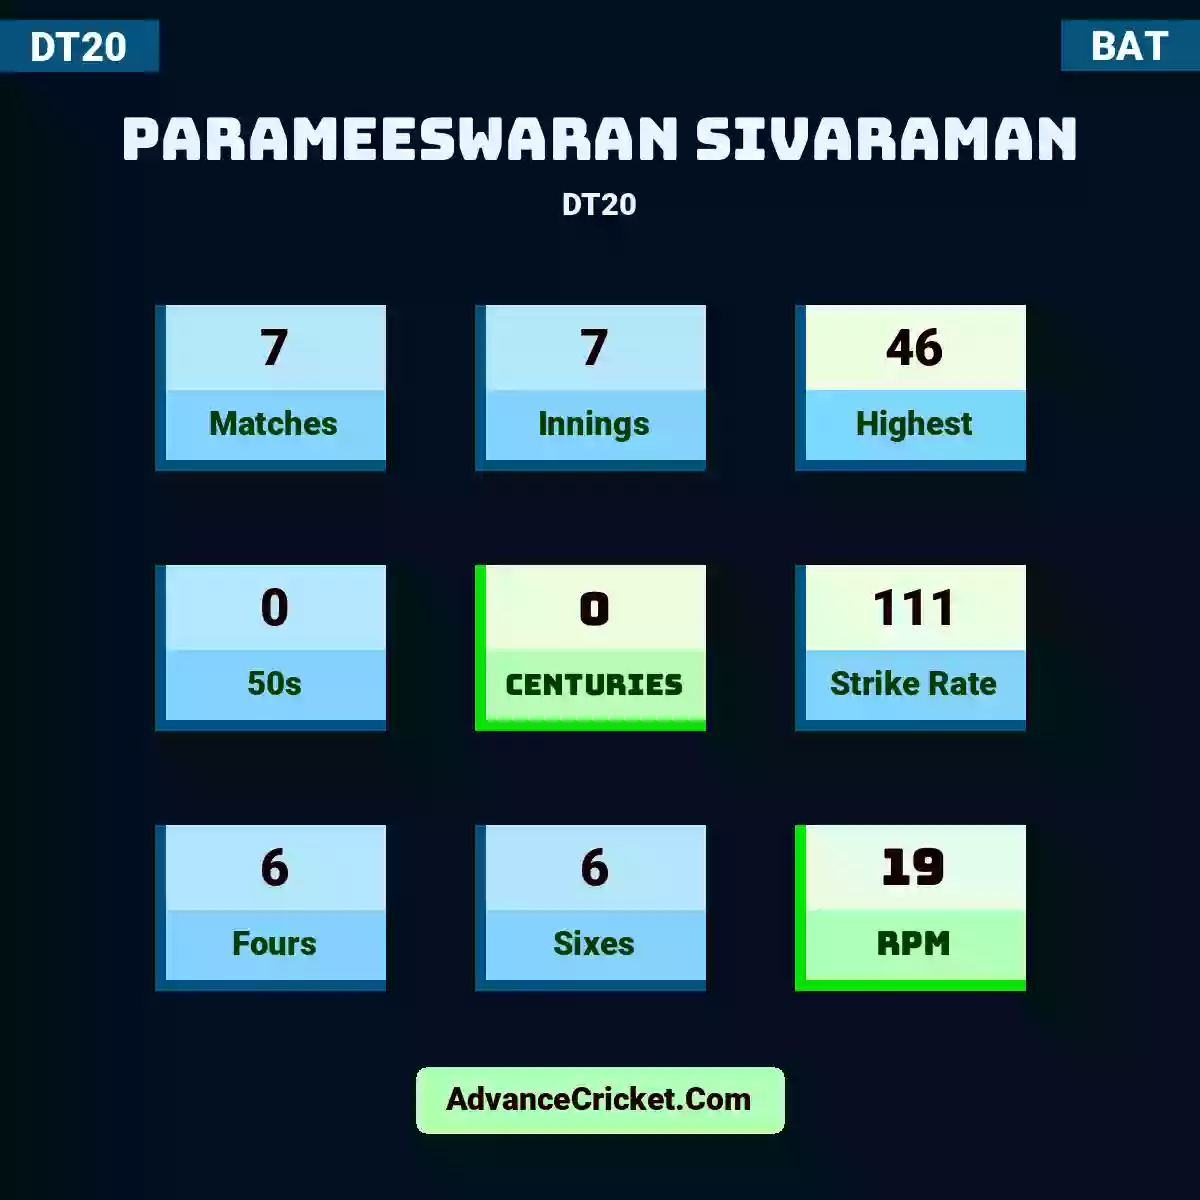 Parameeswaran Sivaraman DT20 , Parameeswaran Sivaraman played 7 matches, scored 46 runs as highest, 0 half-centuries, and 0 centuries, with a strike rate of 111. P.Sivaraman hit 6 fours and 6 sixes, with an RPM of 19.